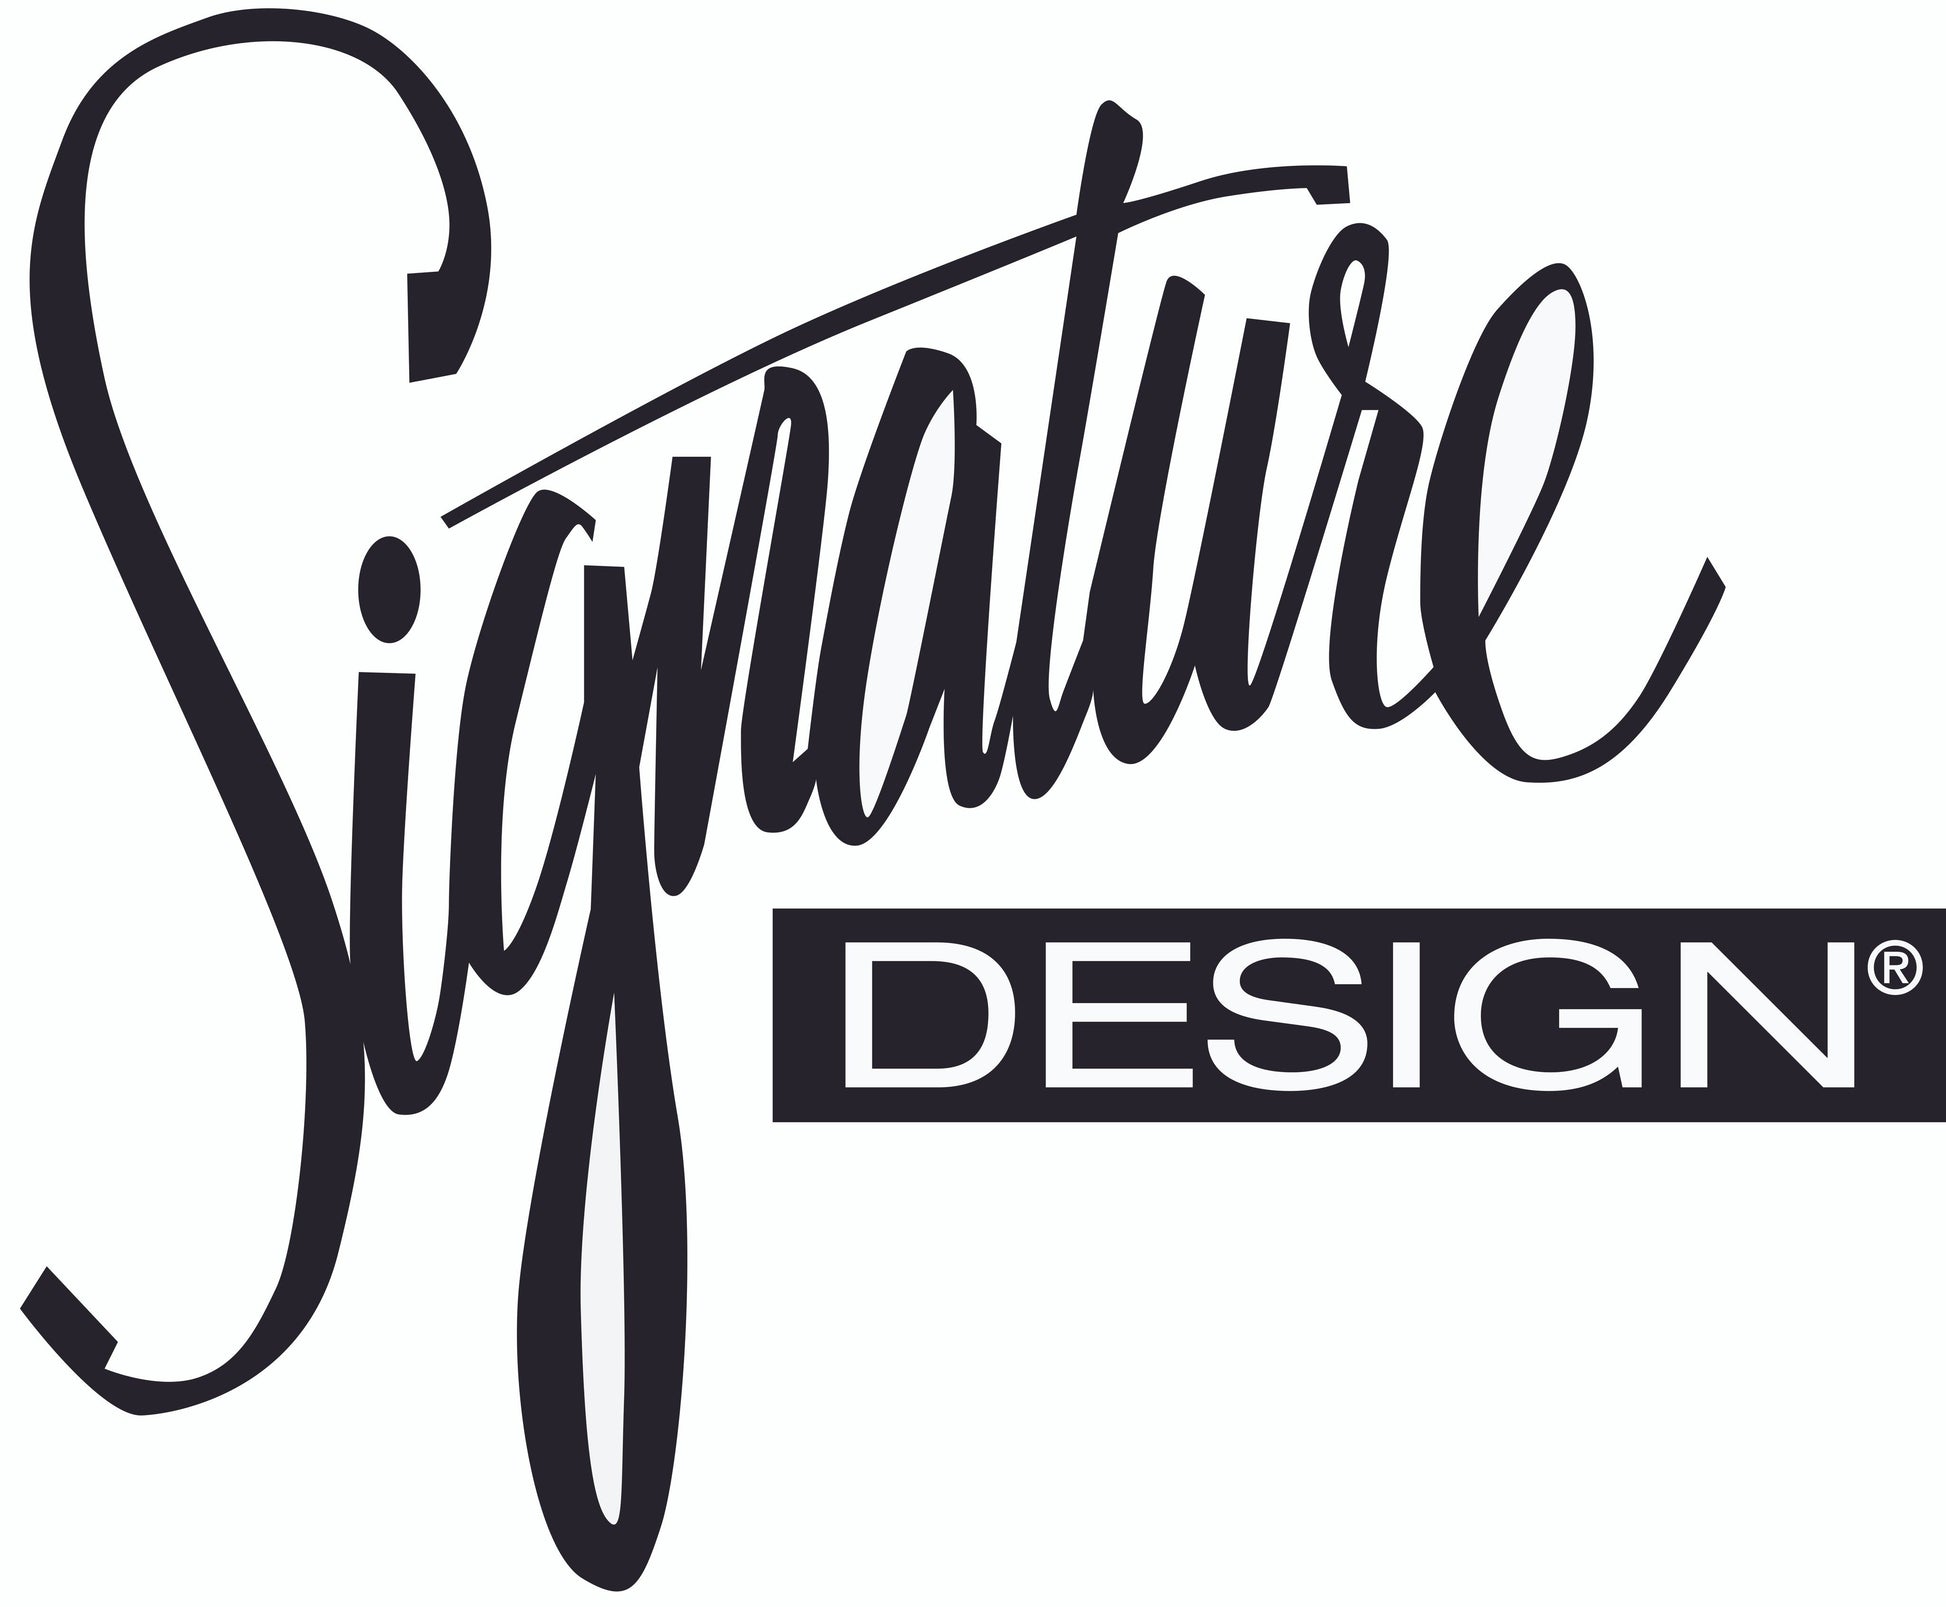 Warlin PWR REC Sofa with ADJ Headrest Signature Design by Ashley®